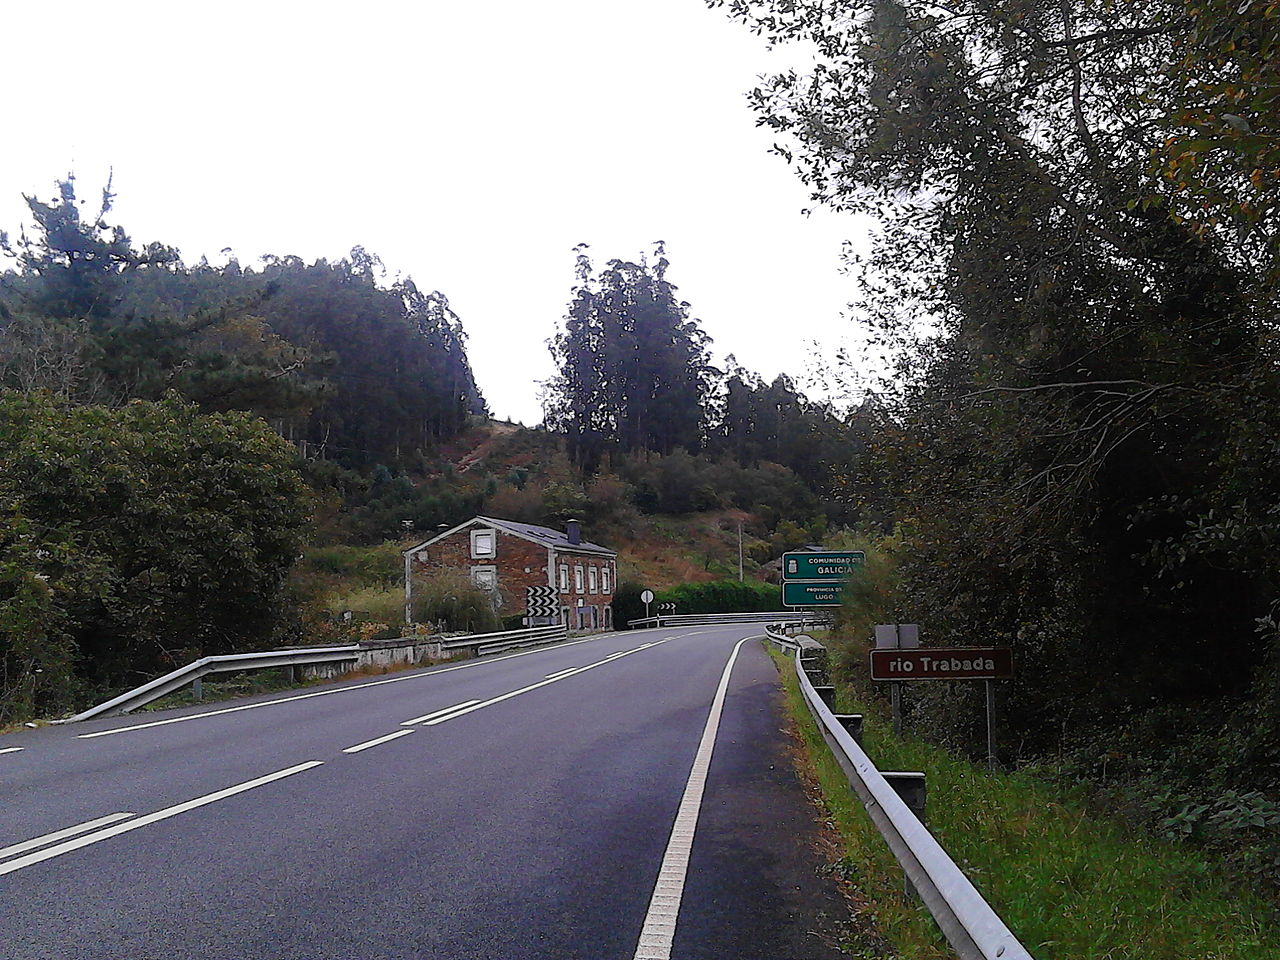 Entrada_en_Trabada,_Galicia,_dende_Asturias_pola_N640.jpg